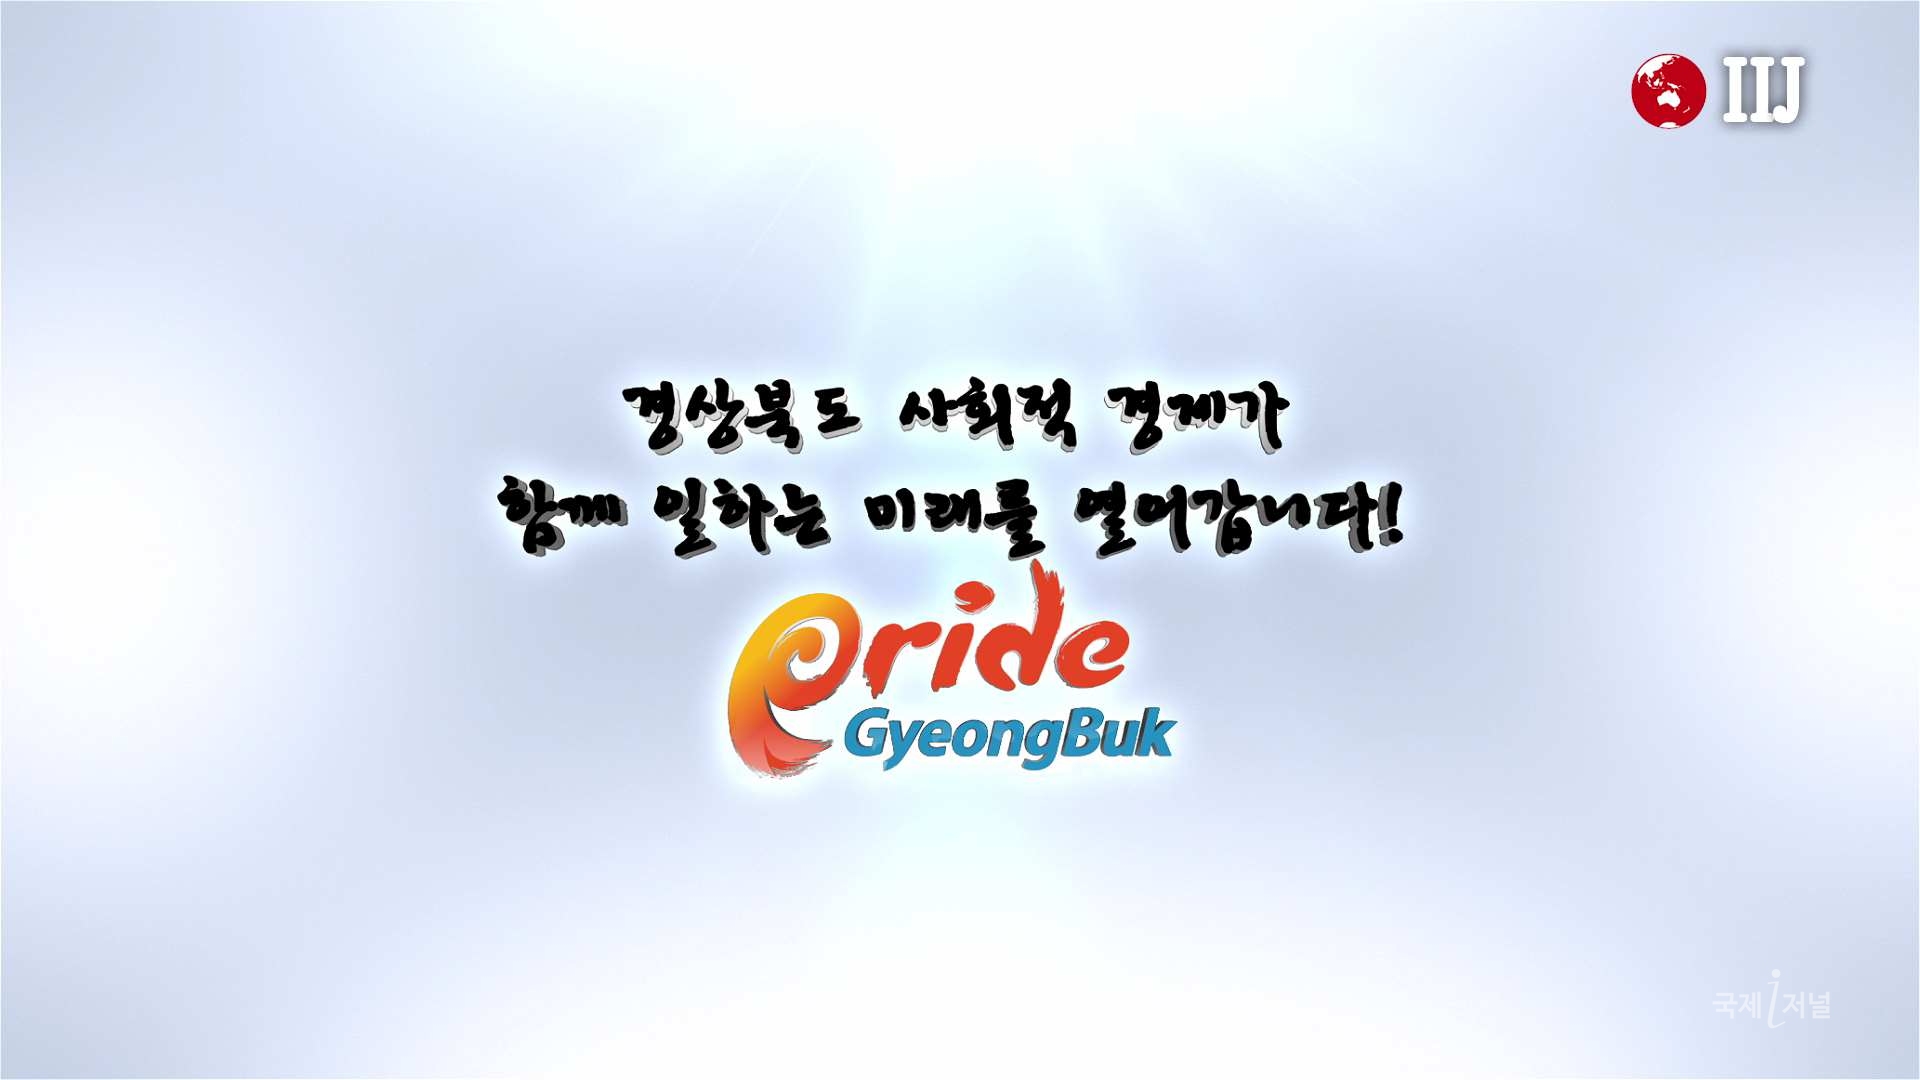 경상북도 사회적경제, 함께 일하는 미래!